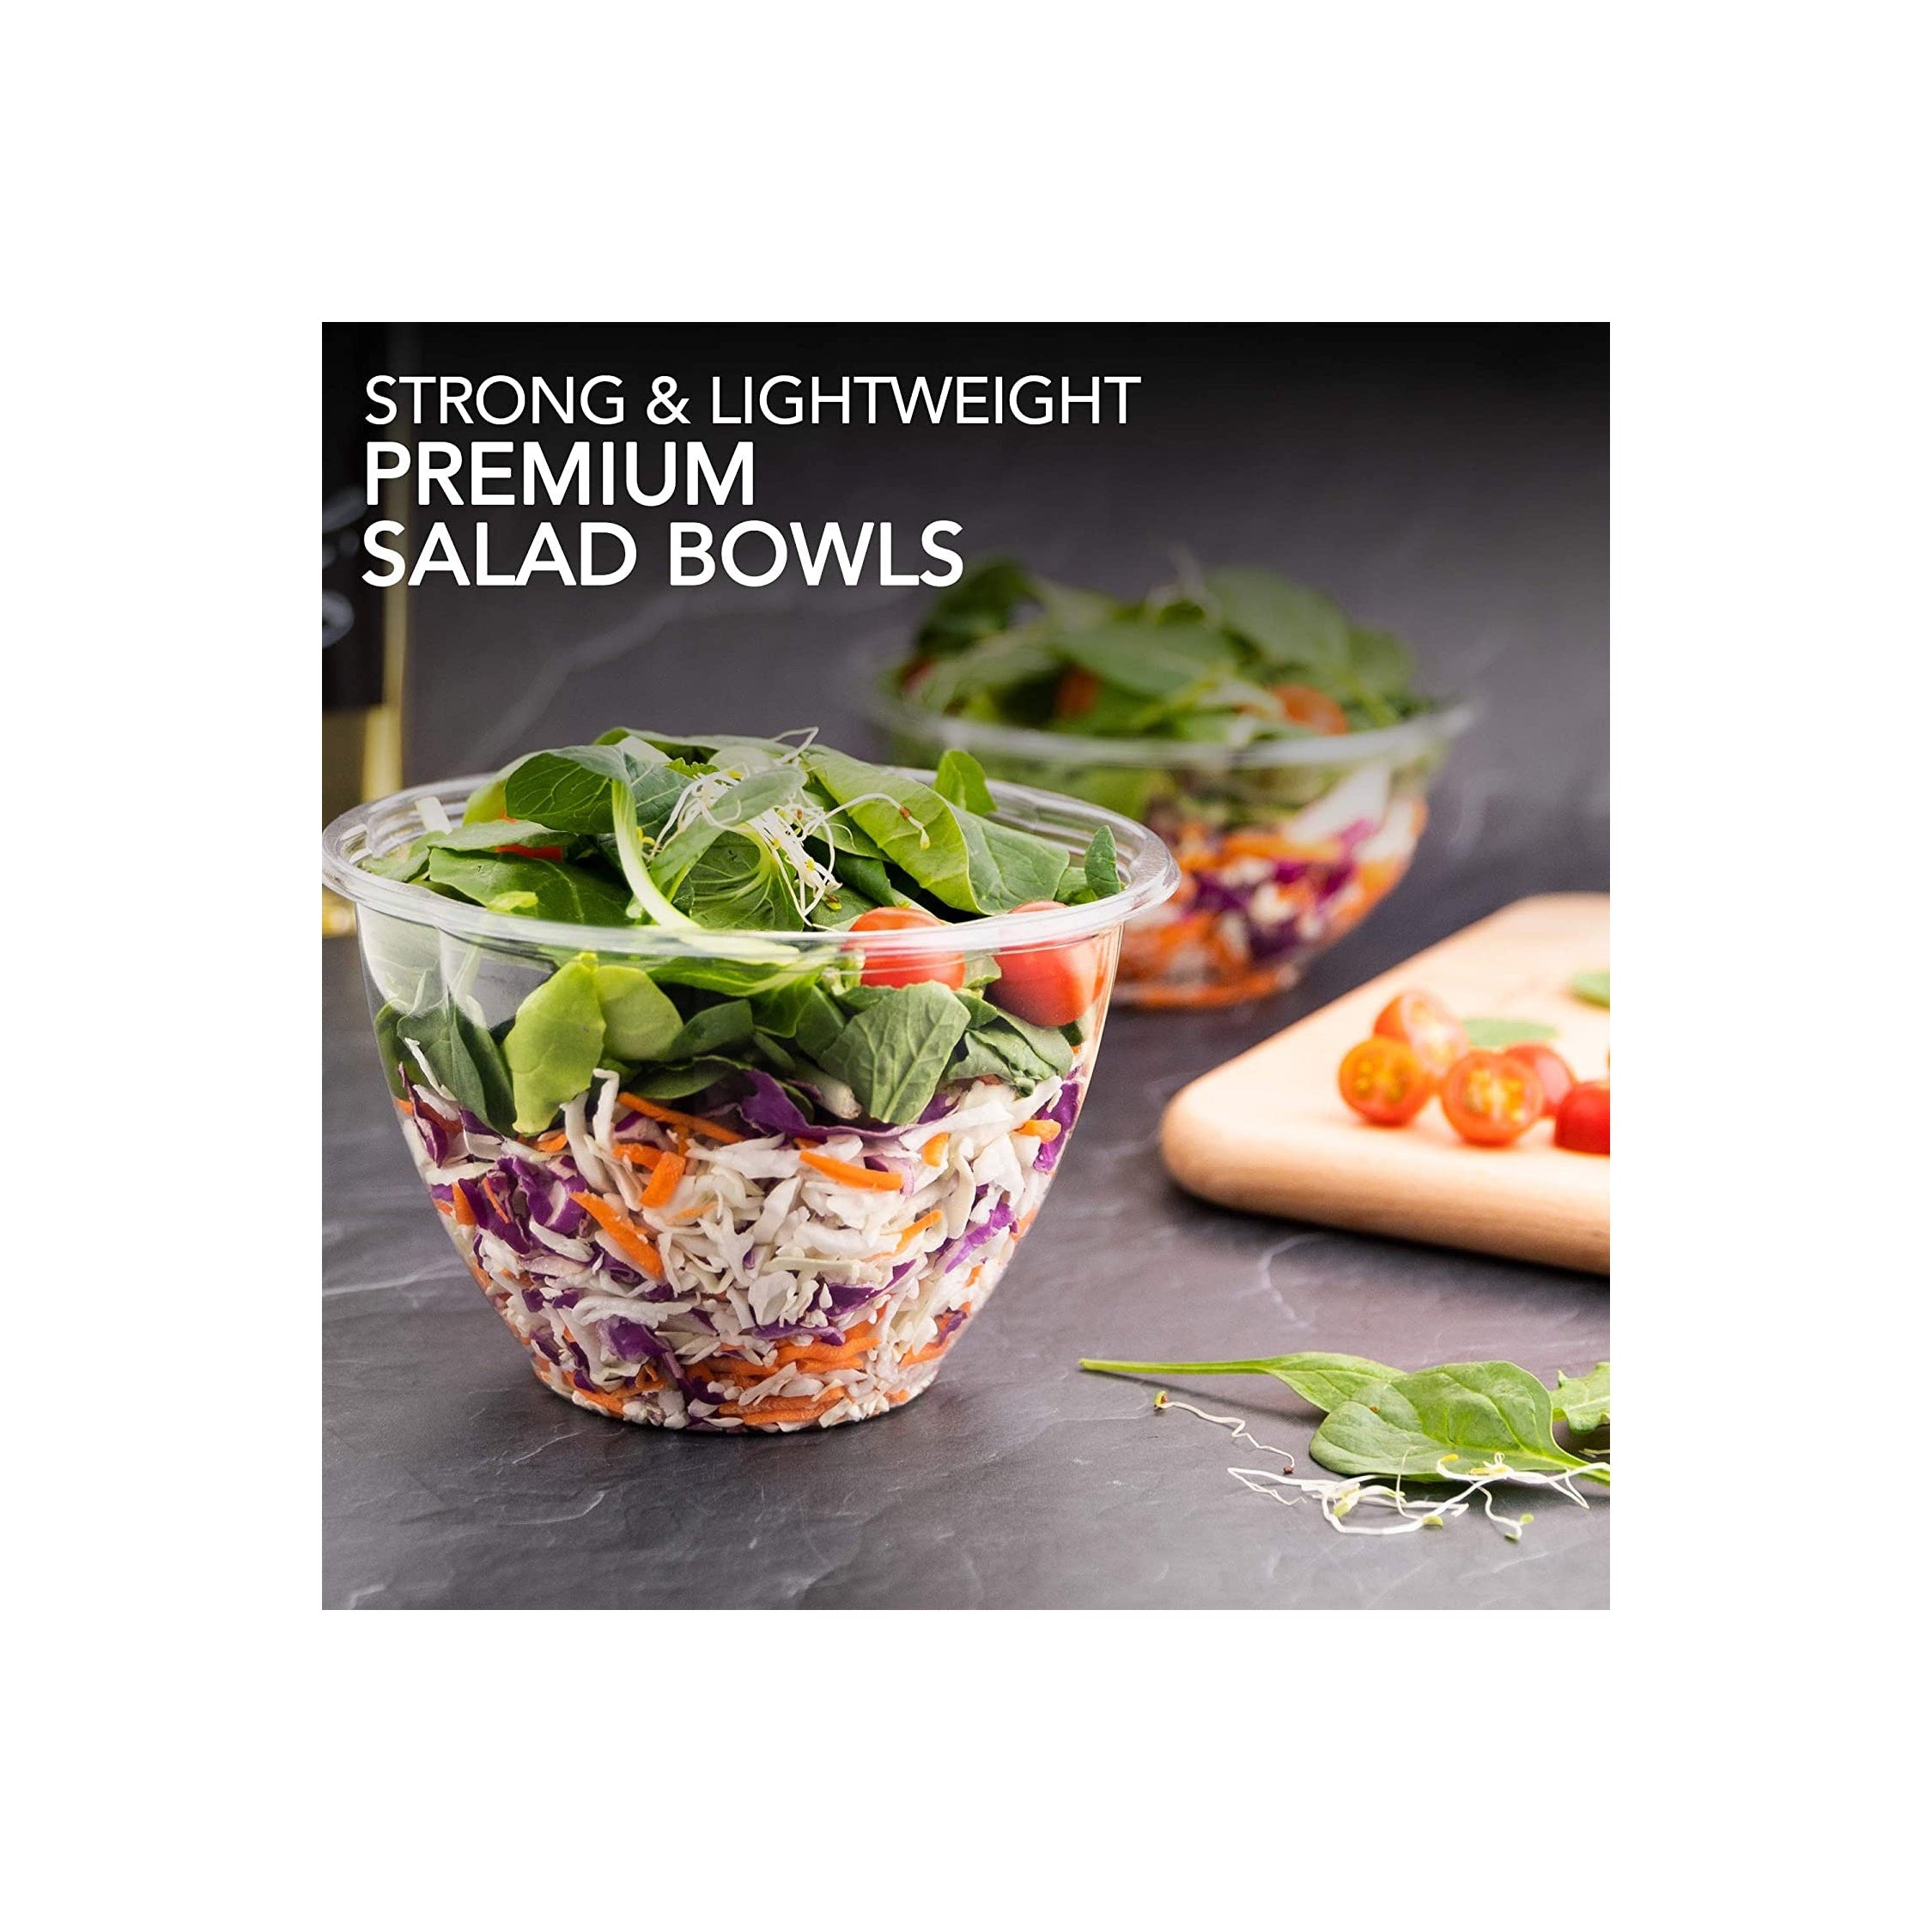 Disposable Salad Bowls with Lids (50 Count) 48 oz. Plastic Salad Bowls - Large S